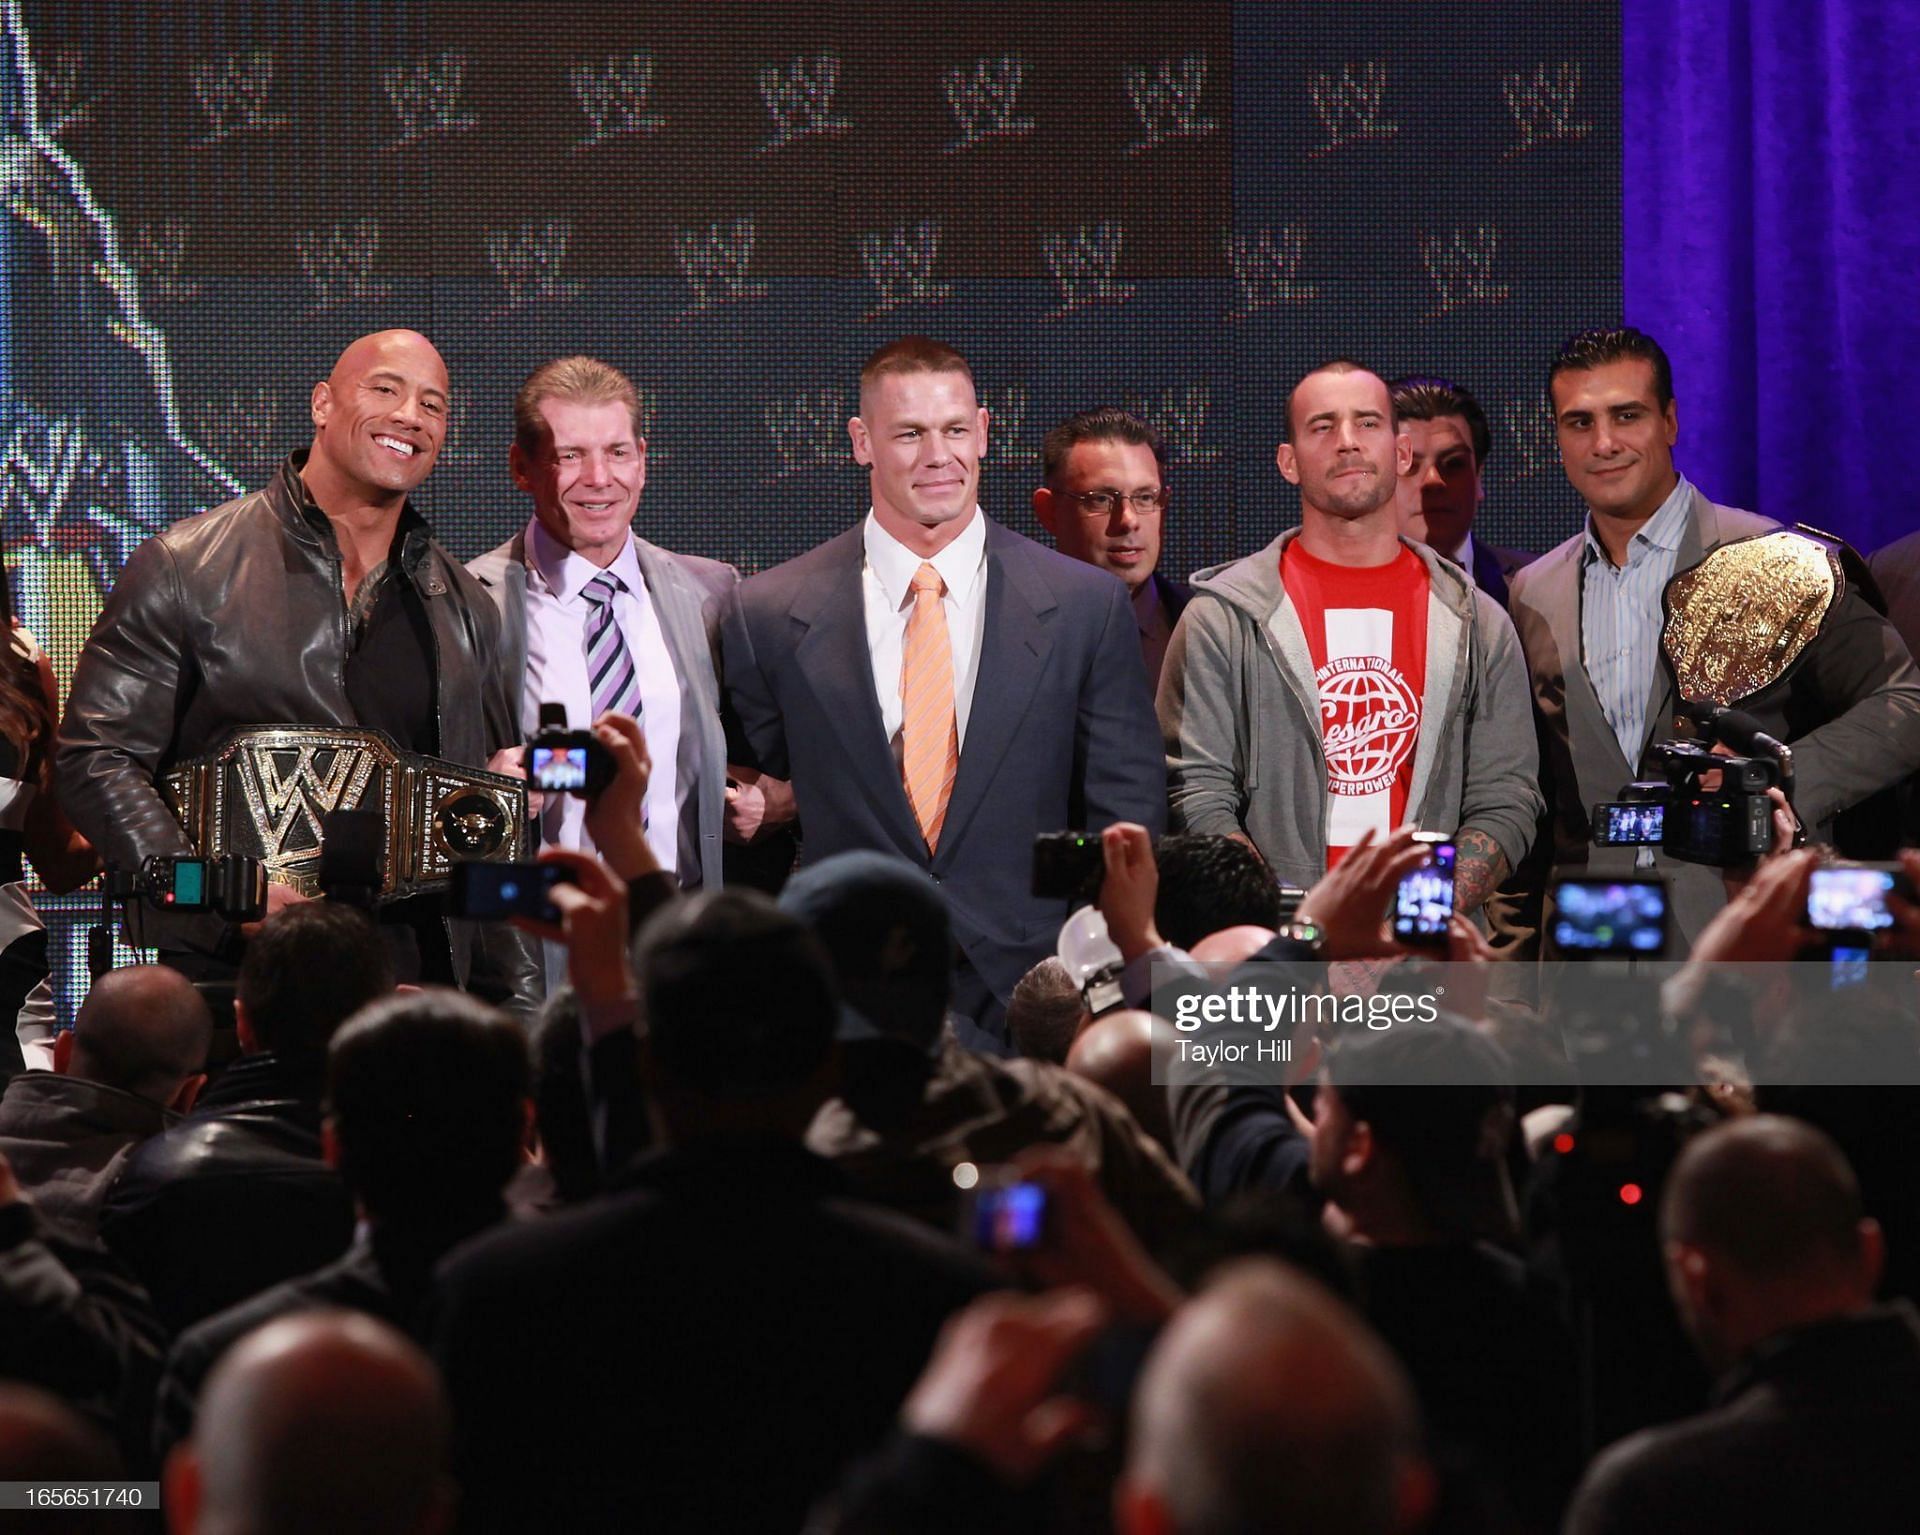 The Rock, alongside fellow WWE Superstars